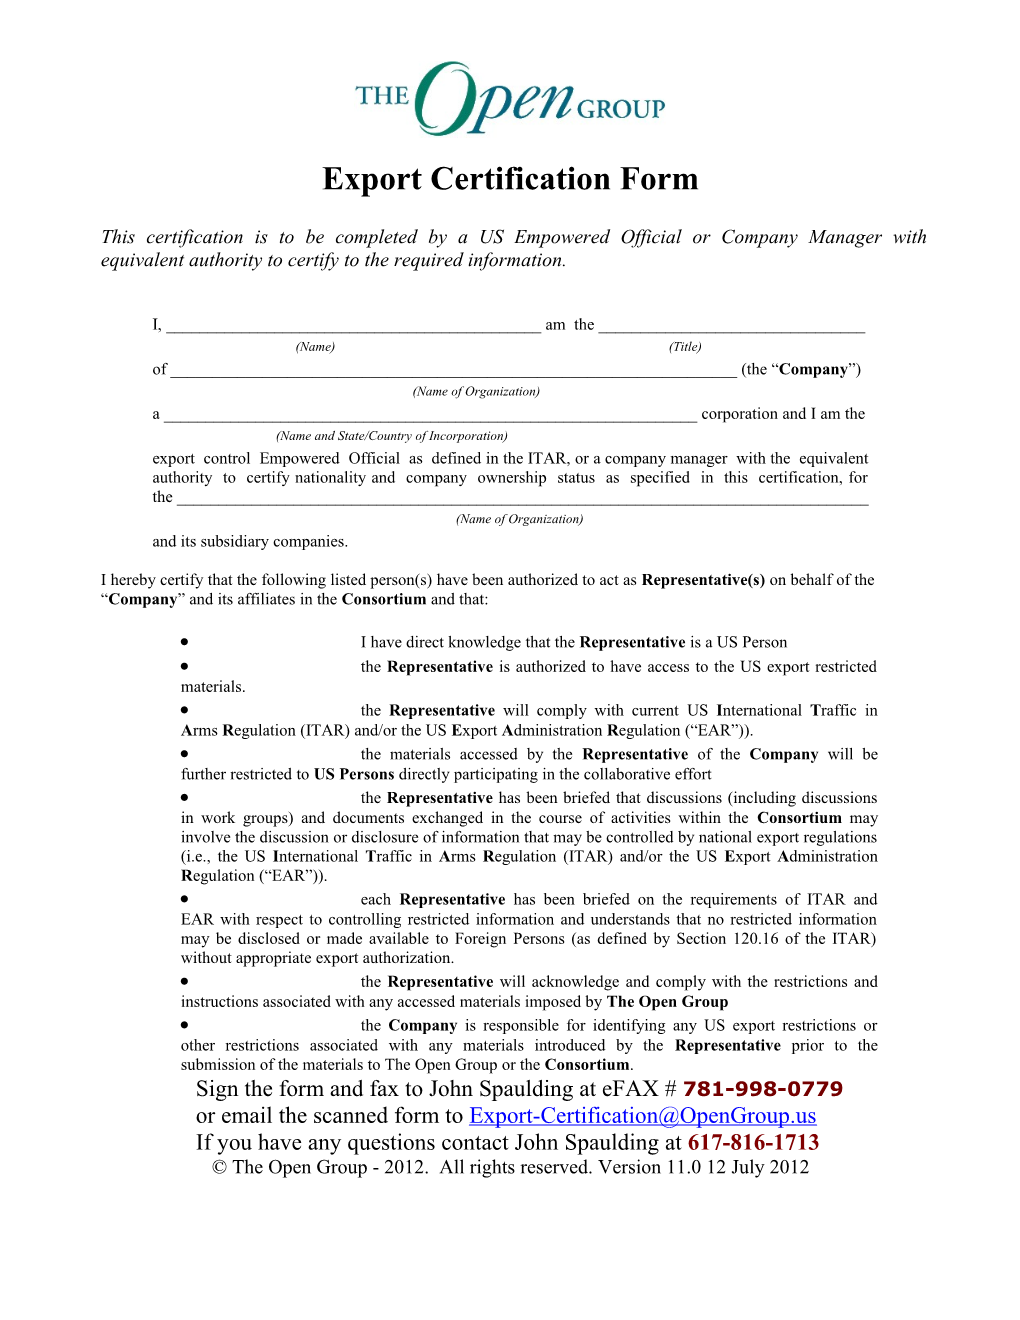 OG Export Certification Form